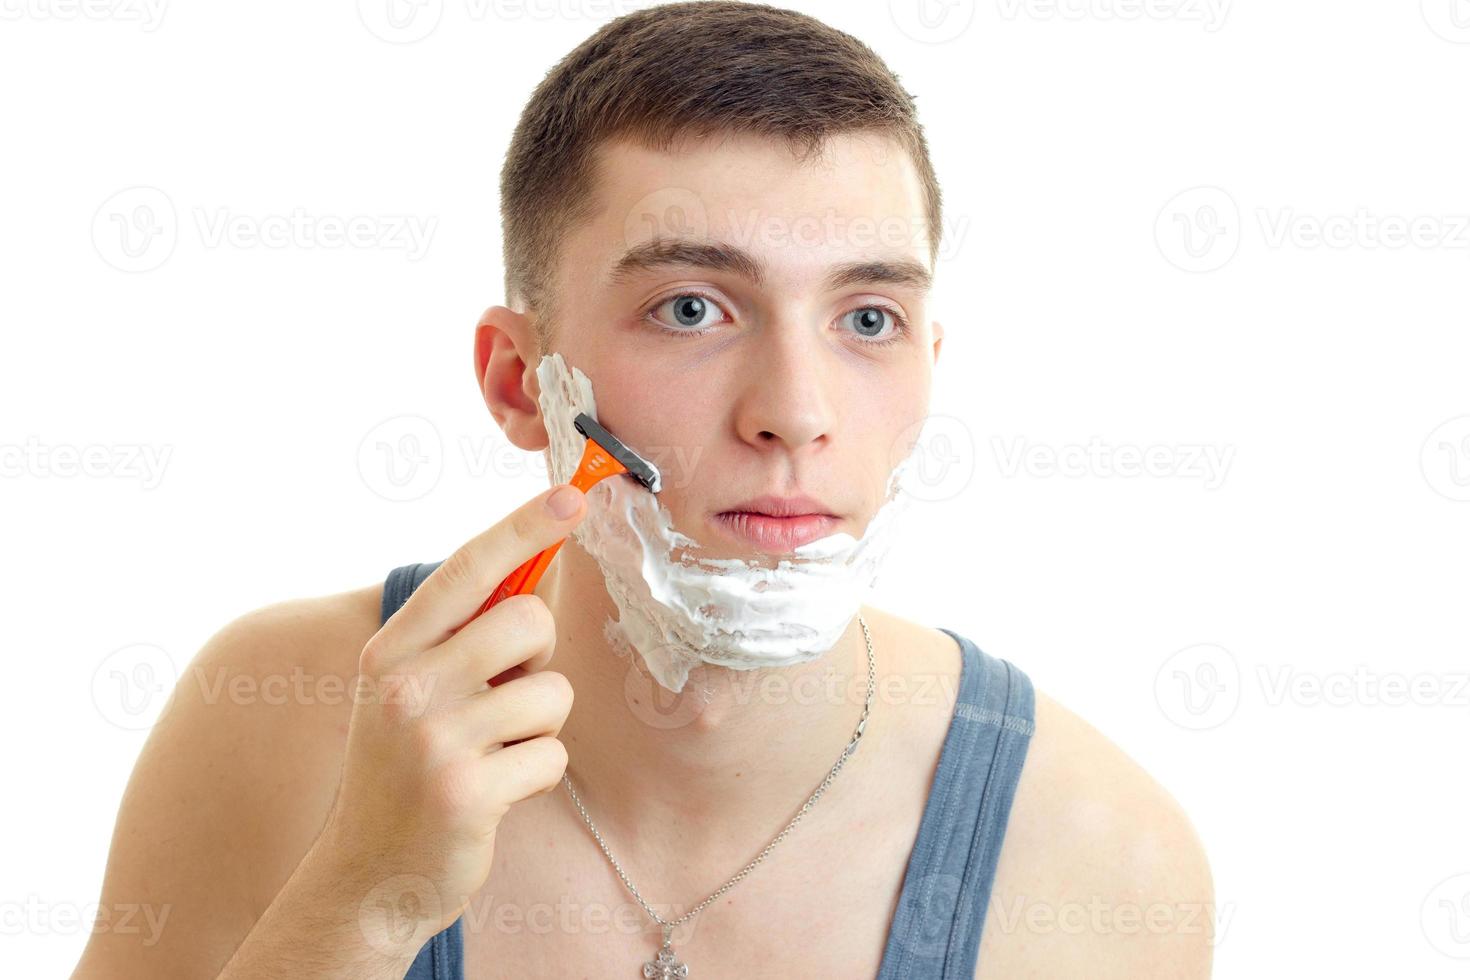 jeune homme regarde devant lui et se rase la barbe avec un rasoir à mousse photo